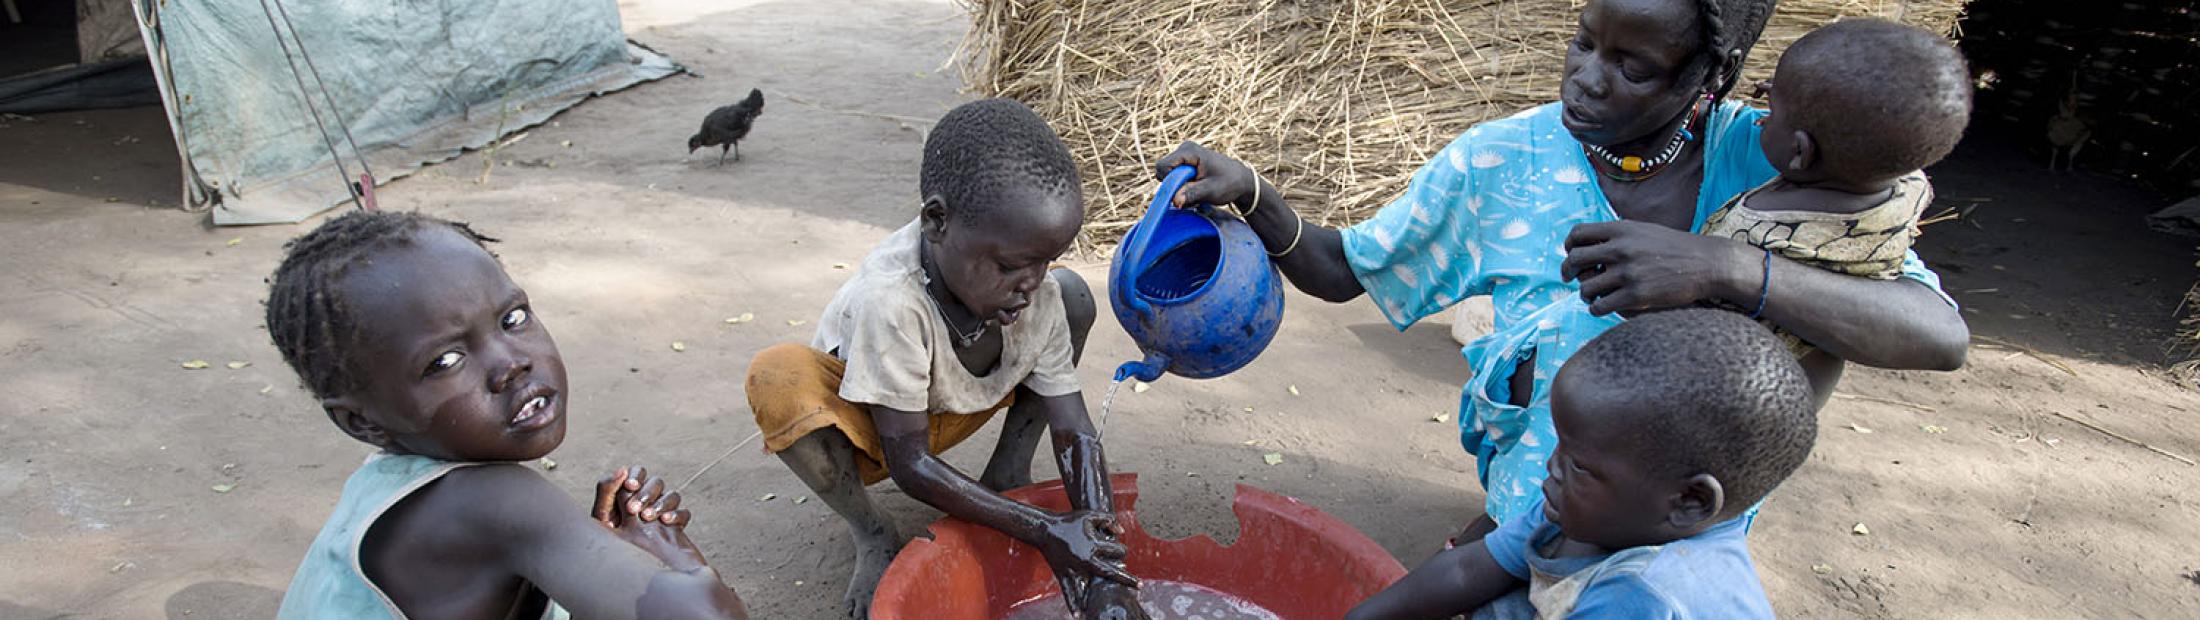 Día Mundial del Agua: retos para evitar su falta